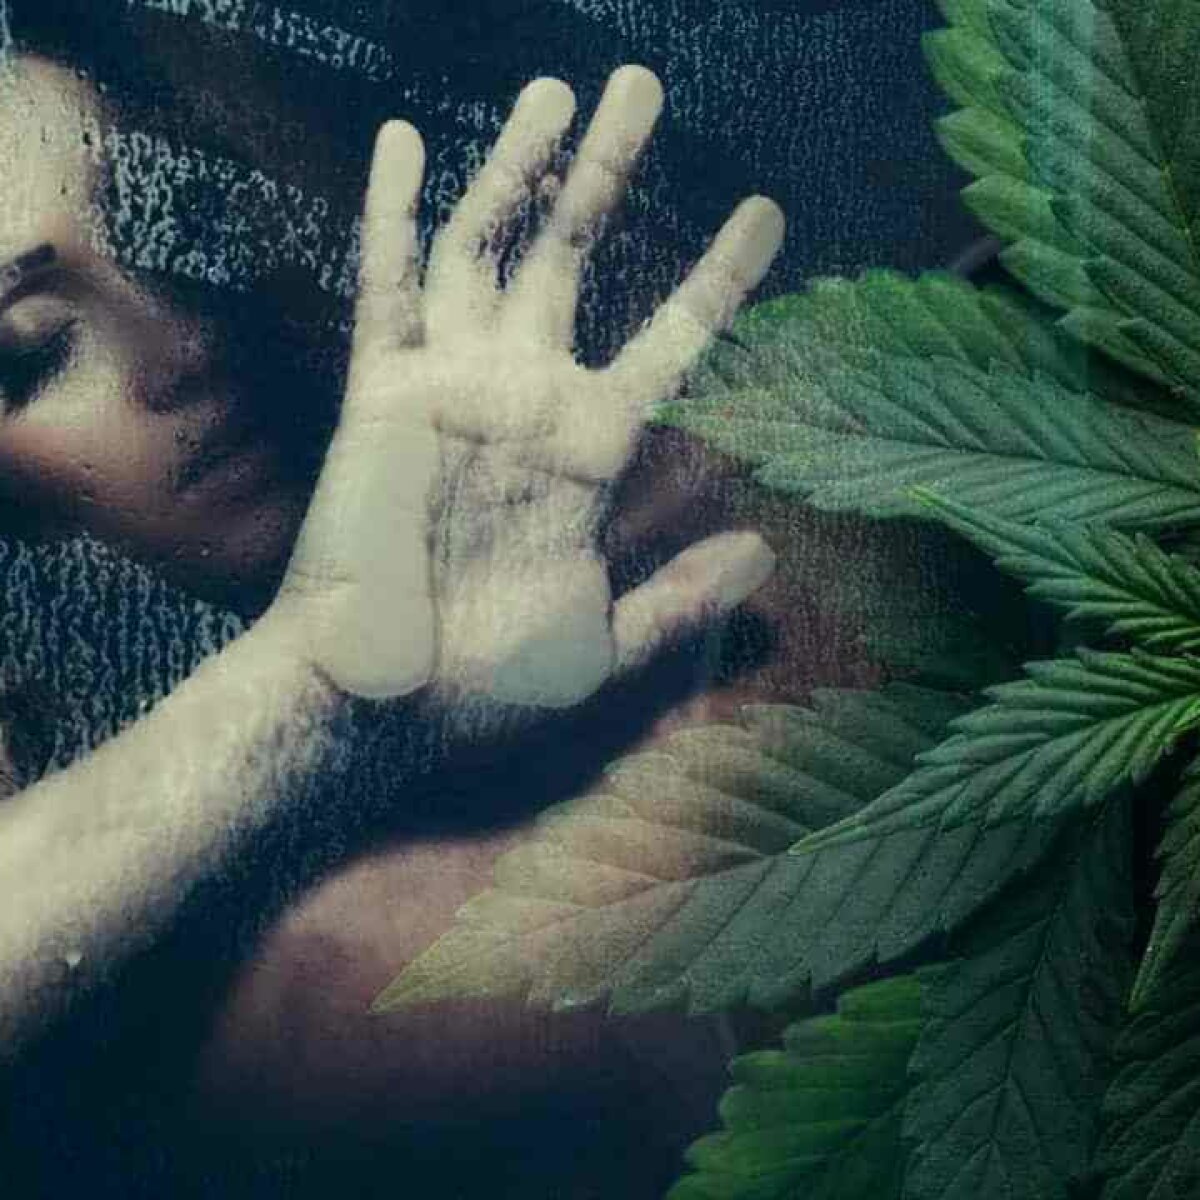 Секс под воздействием марихуаны купить спайс марихуану